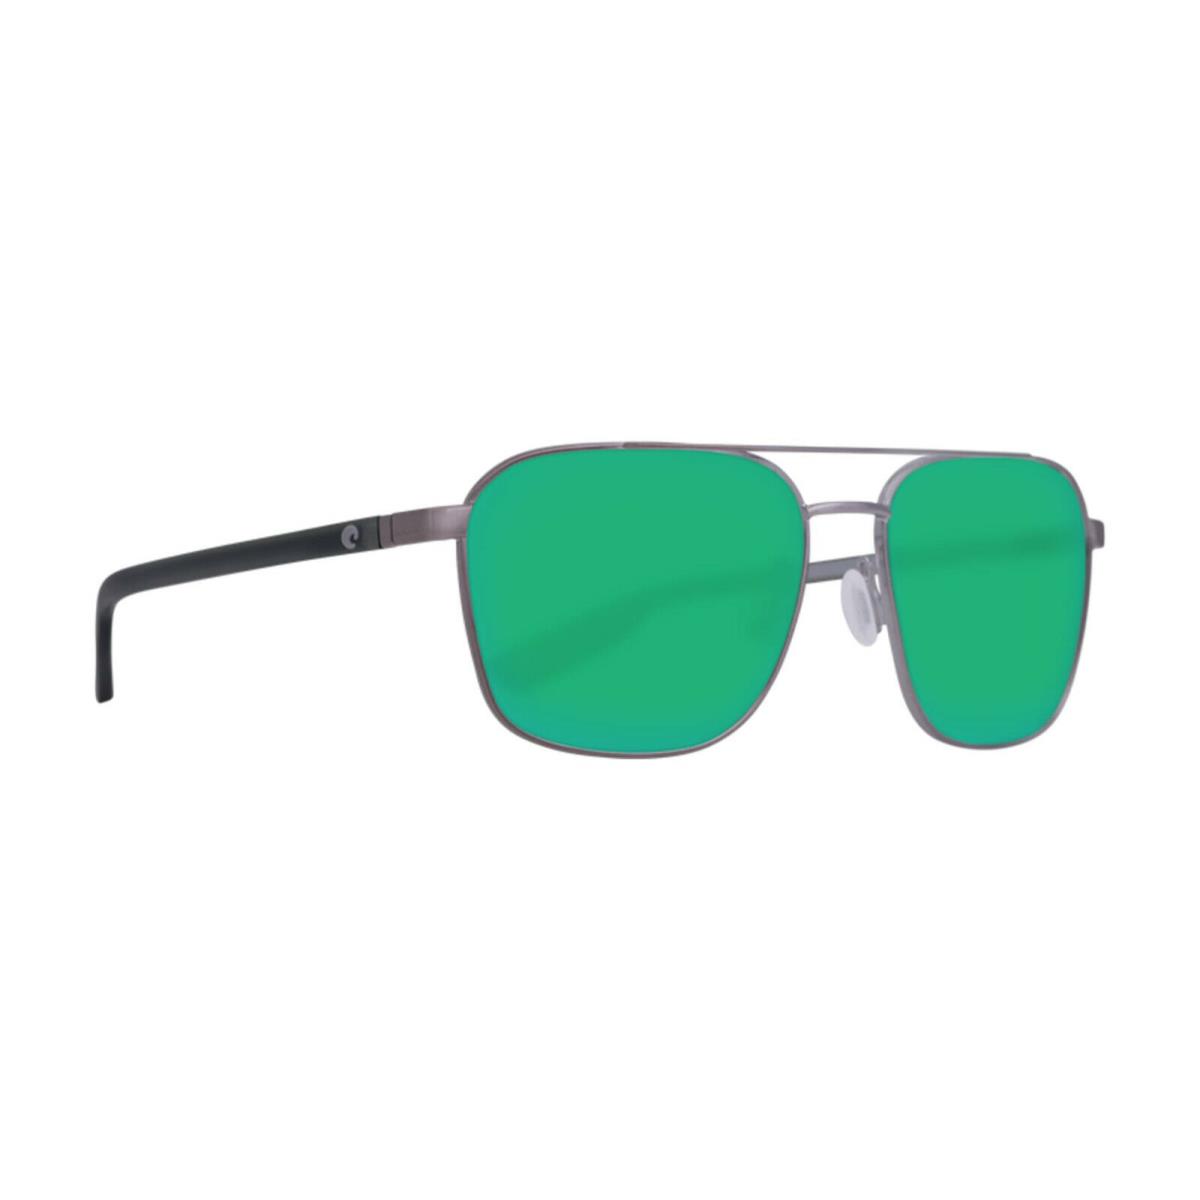 Costa Del Mar Wader Sunglasses - Polarized - Multicolor Frame